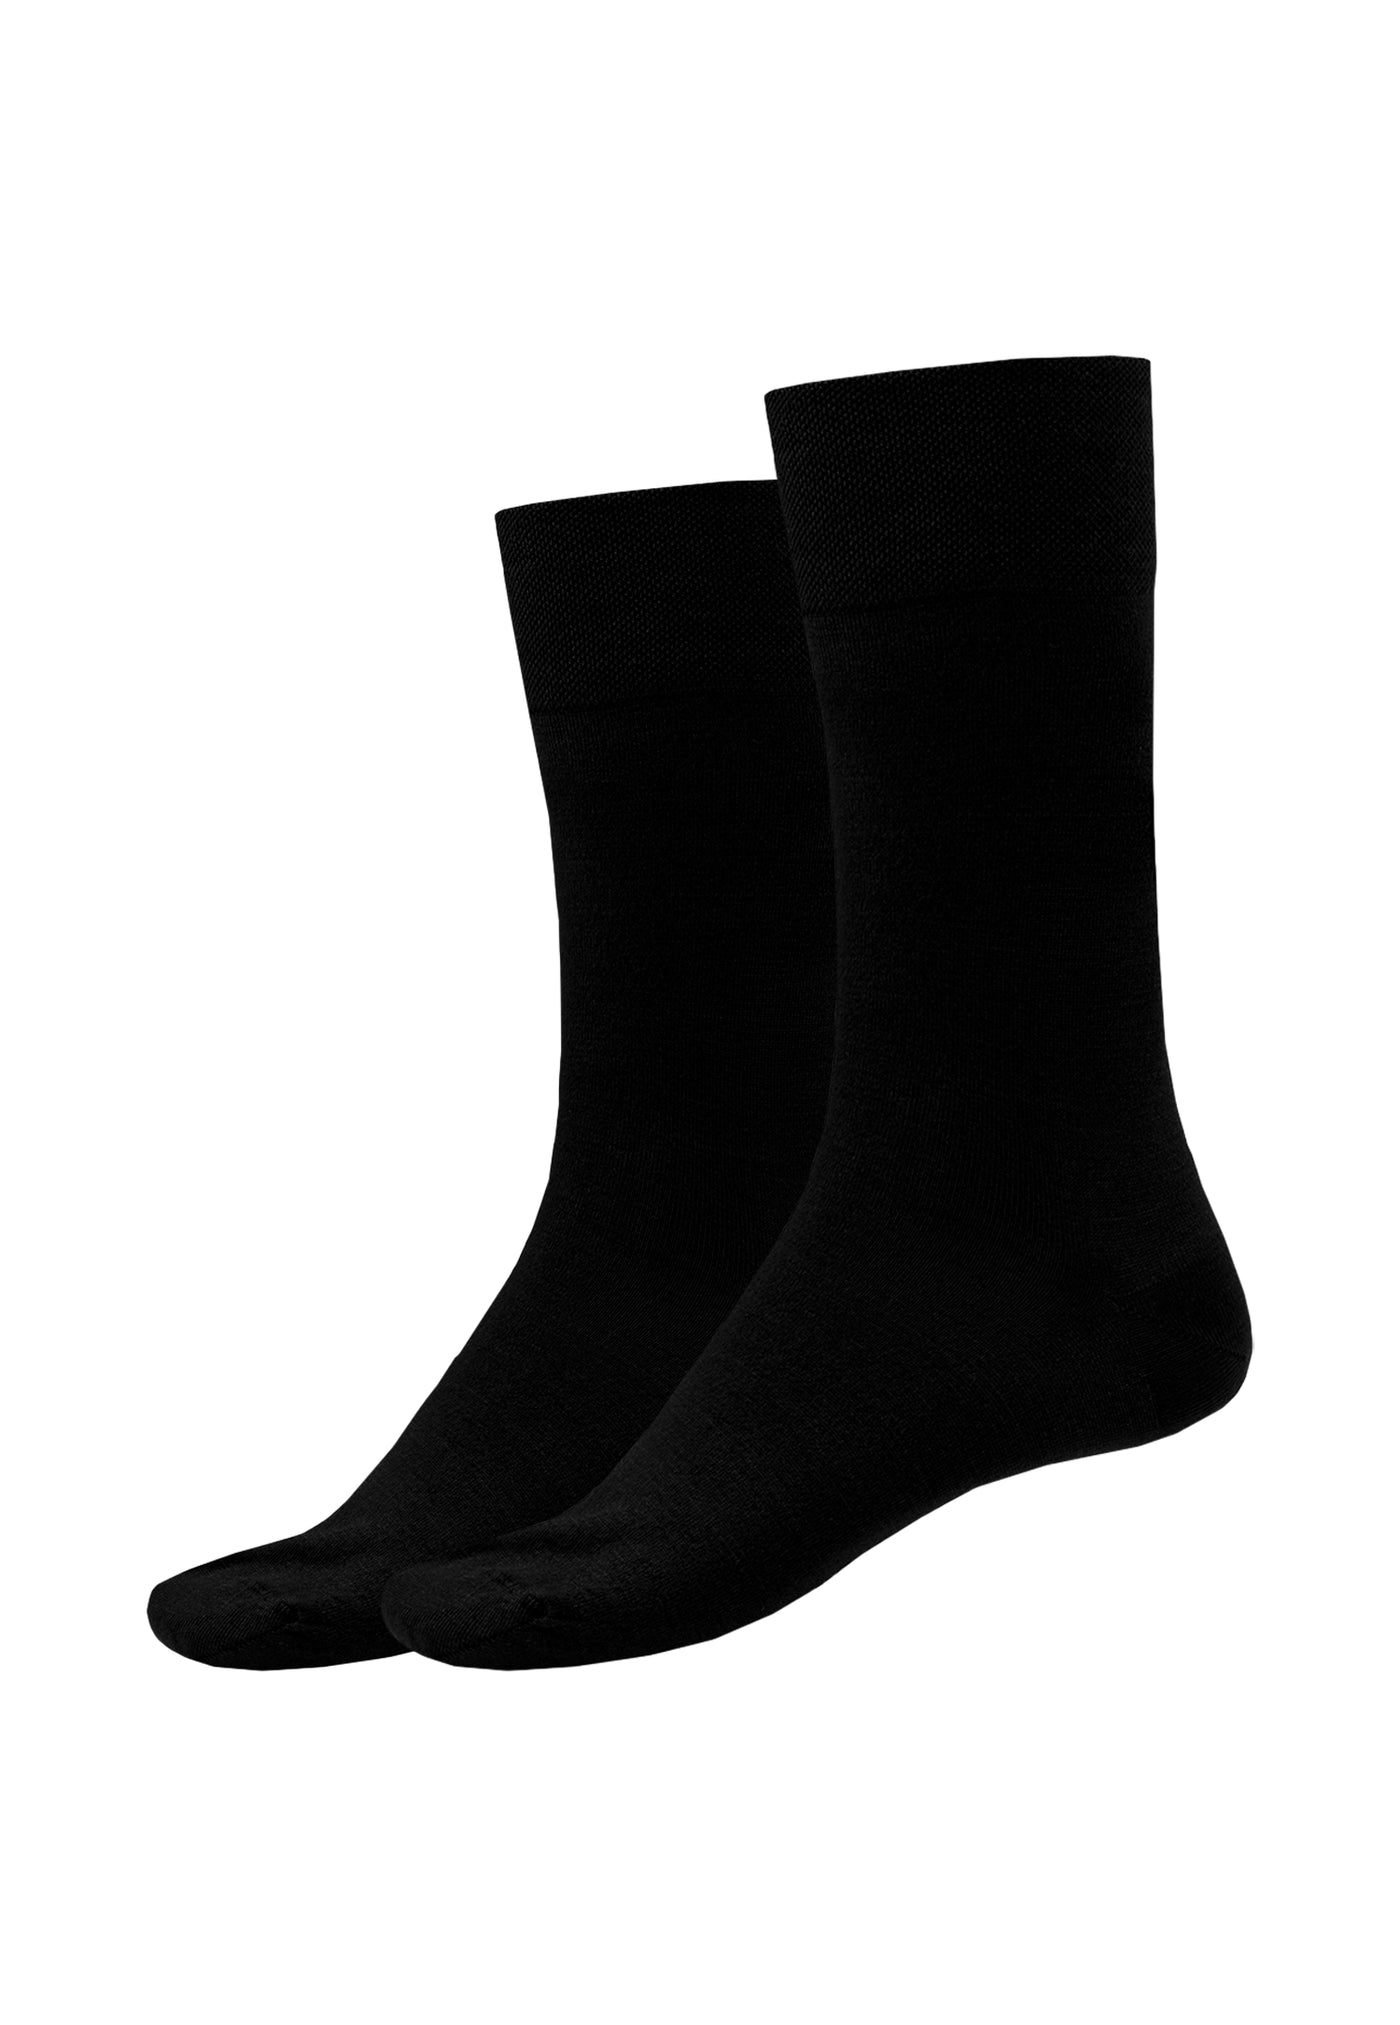 Schiesser - Long Life Cool - Men Socks 2 Pack